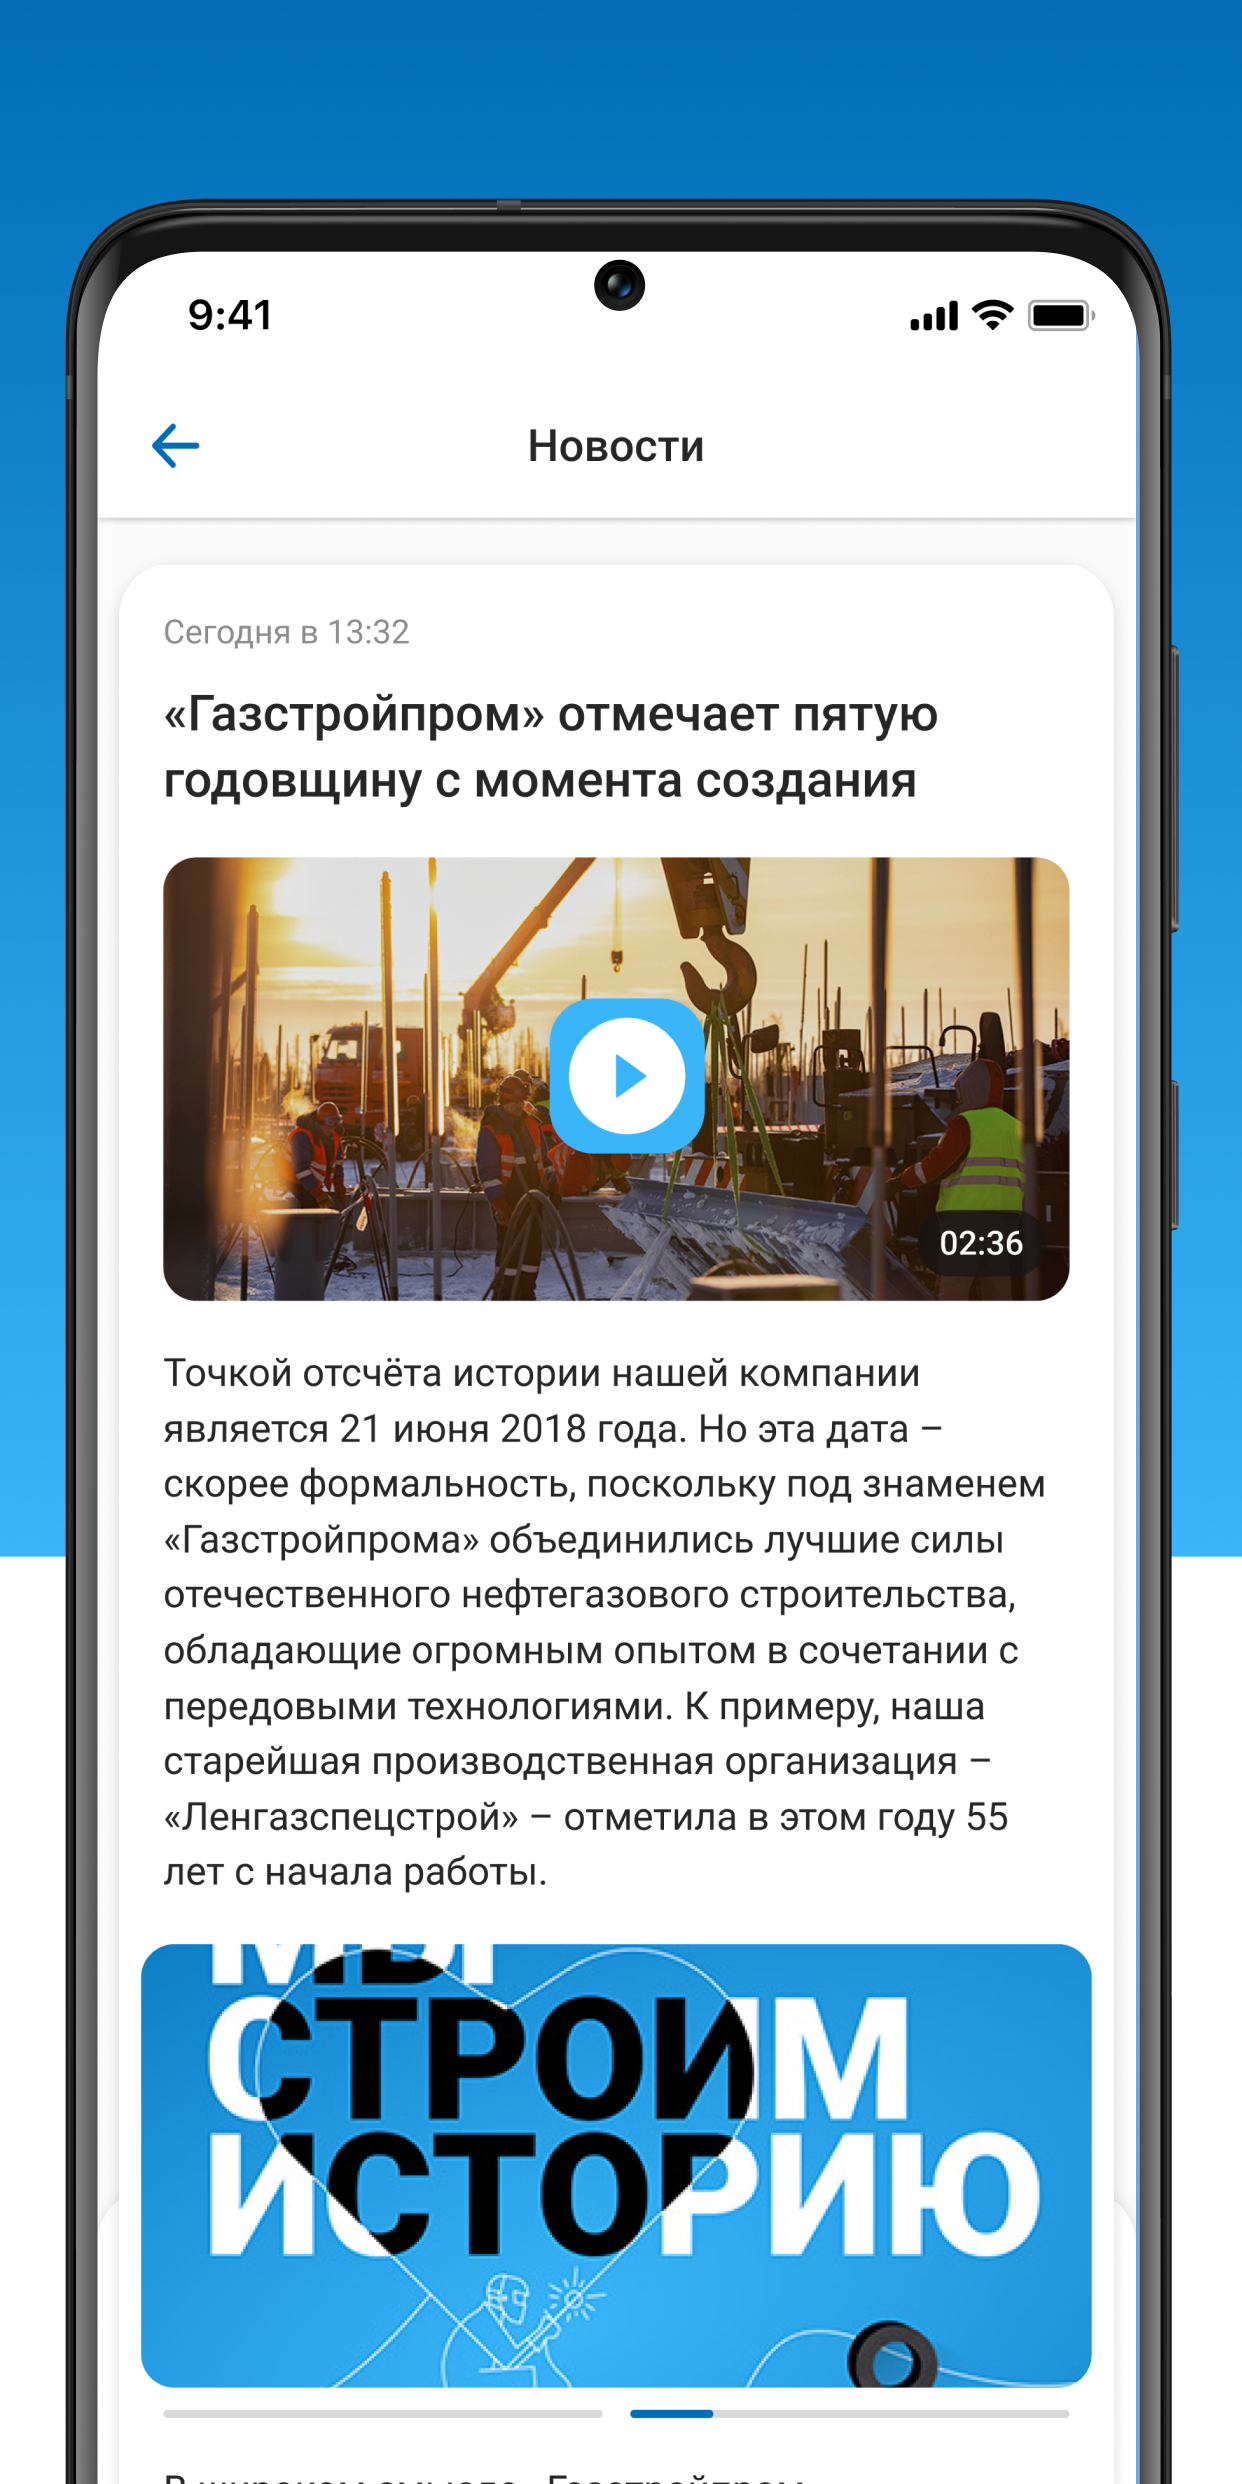 ПРО ГСП – Скачать Приложение Для Android – Каталог RuStore